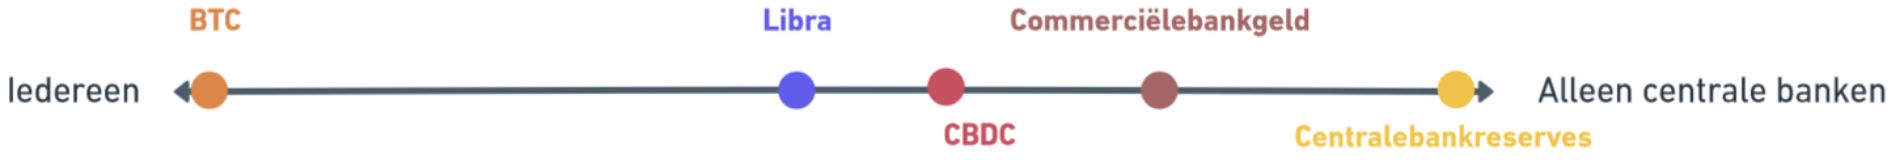 DNB CBDC vs Bitcoin vs Libra 3.jpg